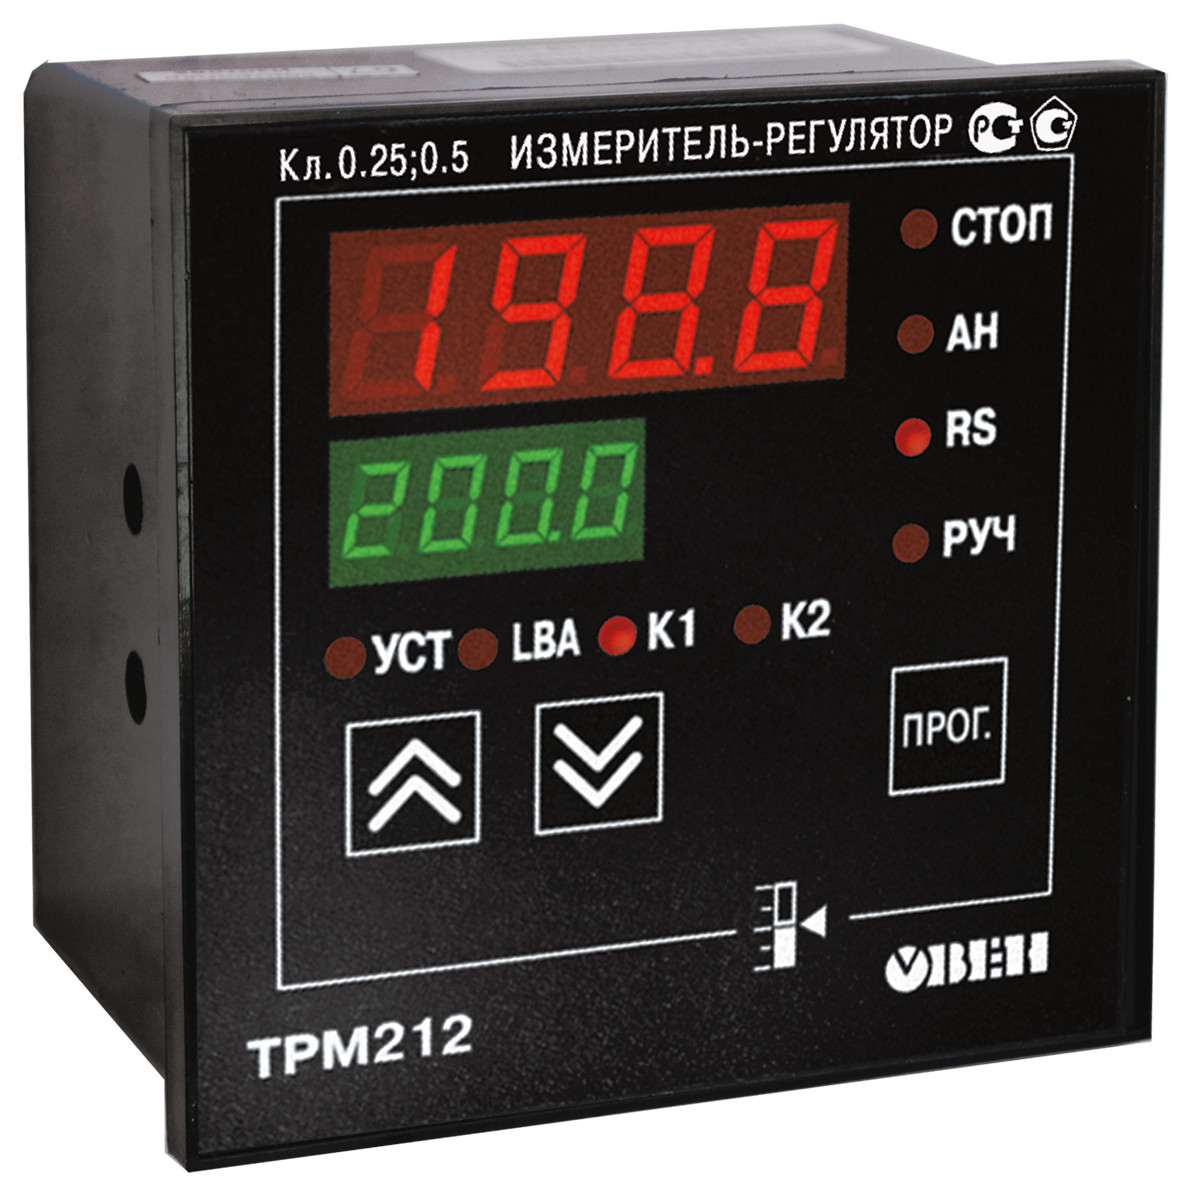 ТРМ212 ПІД-регулятор для керування засувками та триодовими клапанами з RS-485 Н, З, Р